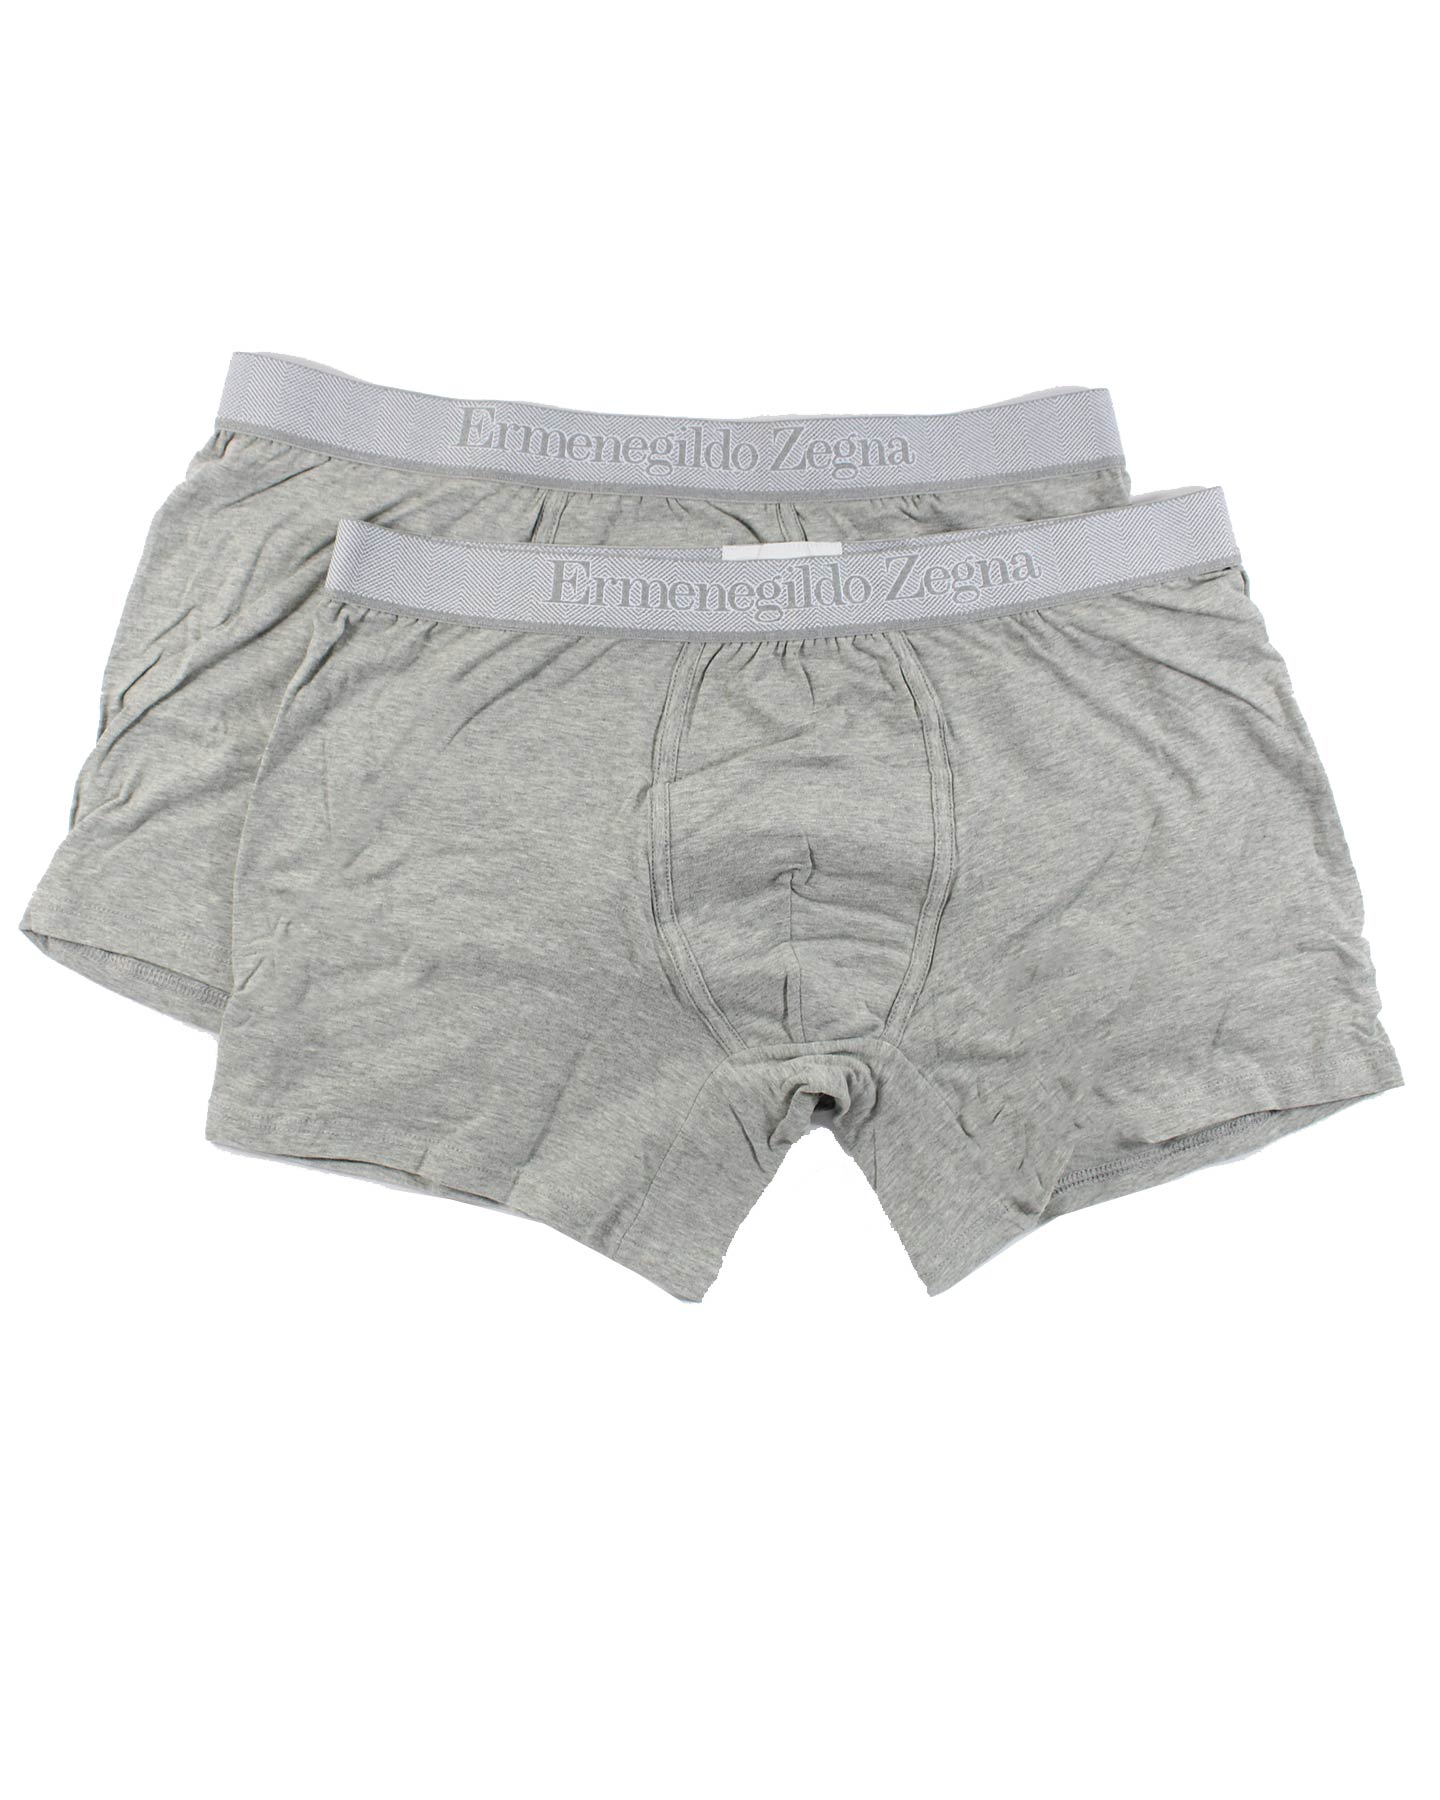 Ermenegildo Zegna Boxer Briefs Gray Men Underwear 2 Pack Stretch Cotton XXXL